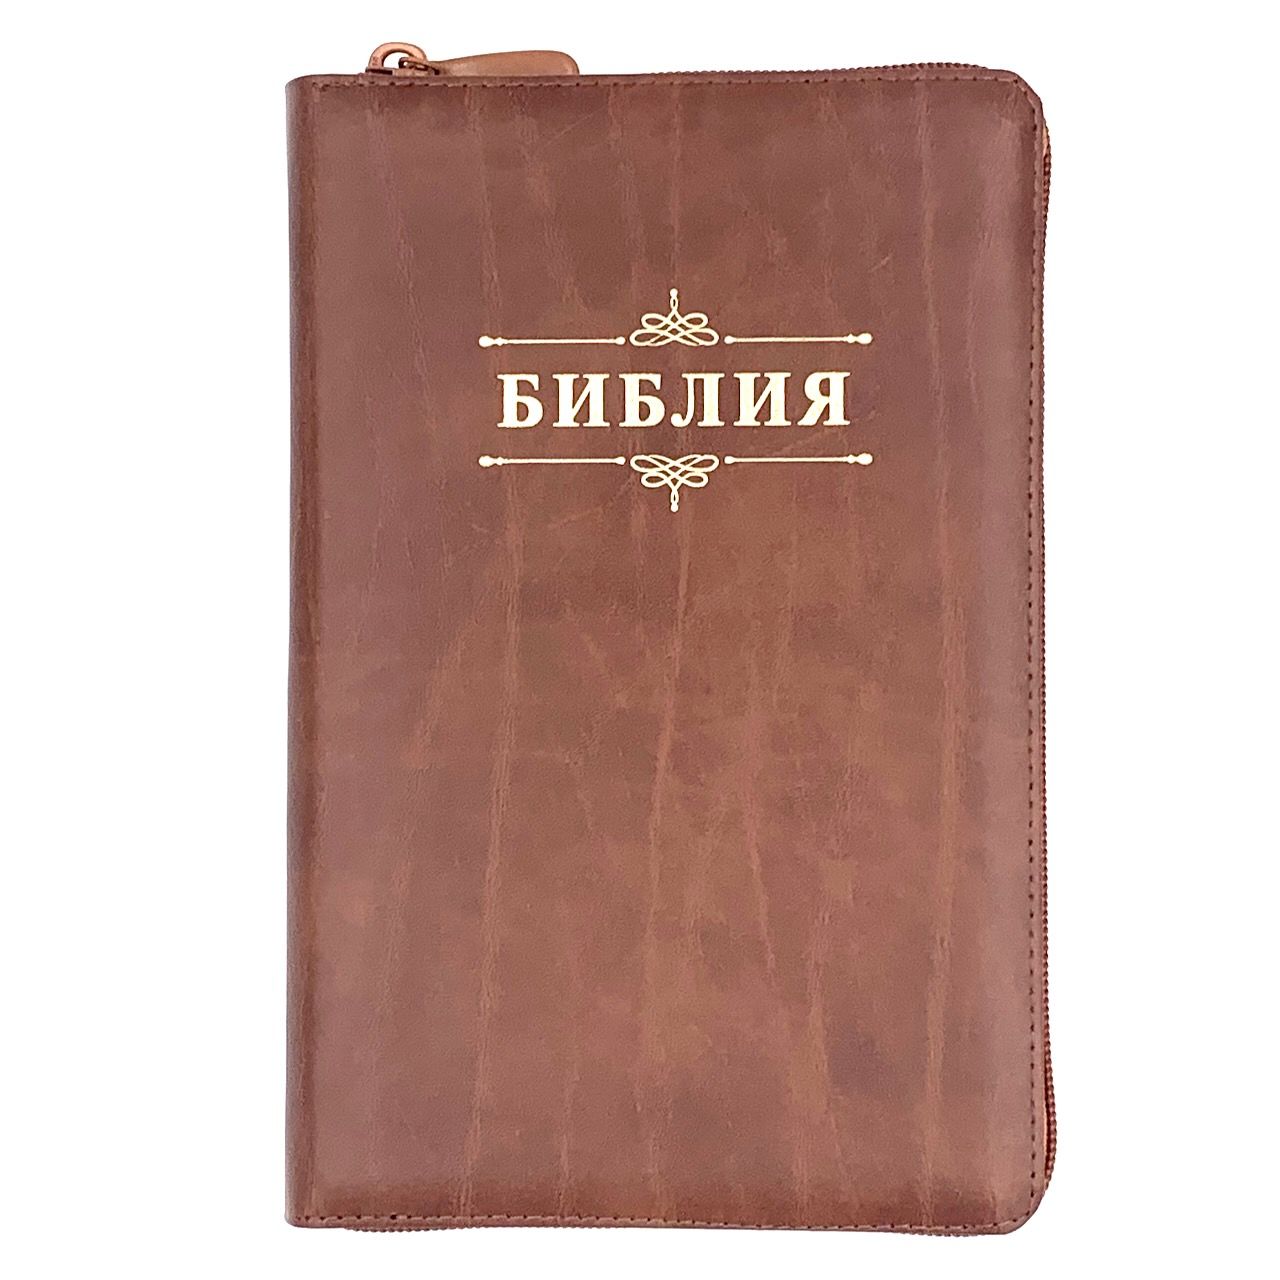 Библия 055zti код 23055-31 надпись "Библия с вензелем", кожаный переплет на молнии с индексами, цвет светло-коричневый с прожилками, средний формат, 143*220 мм